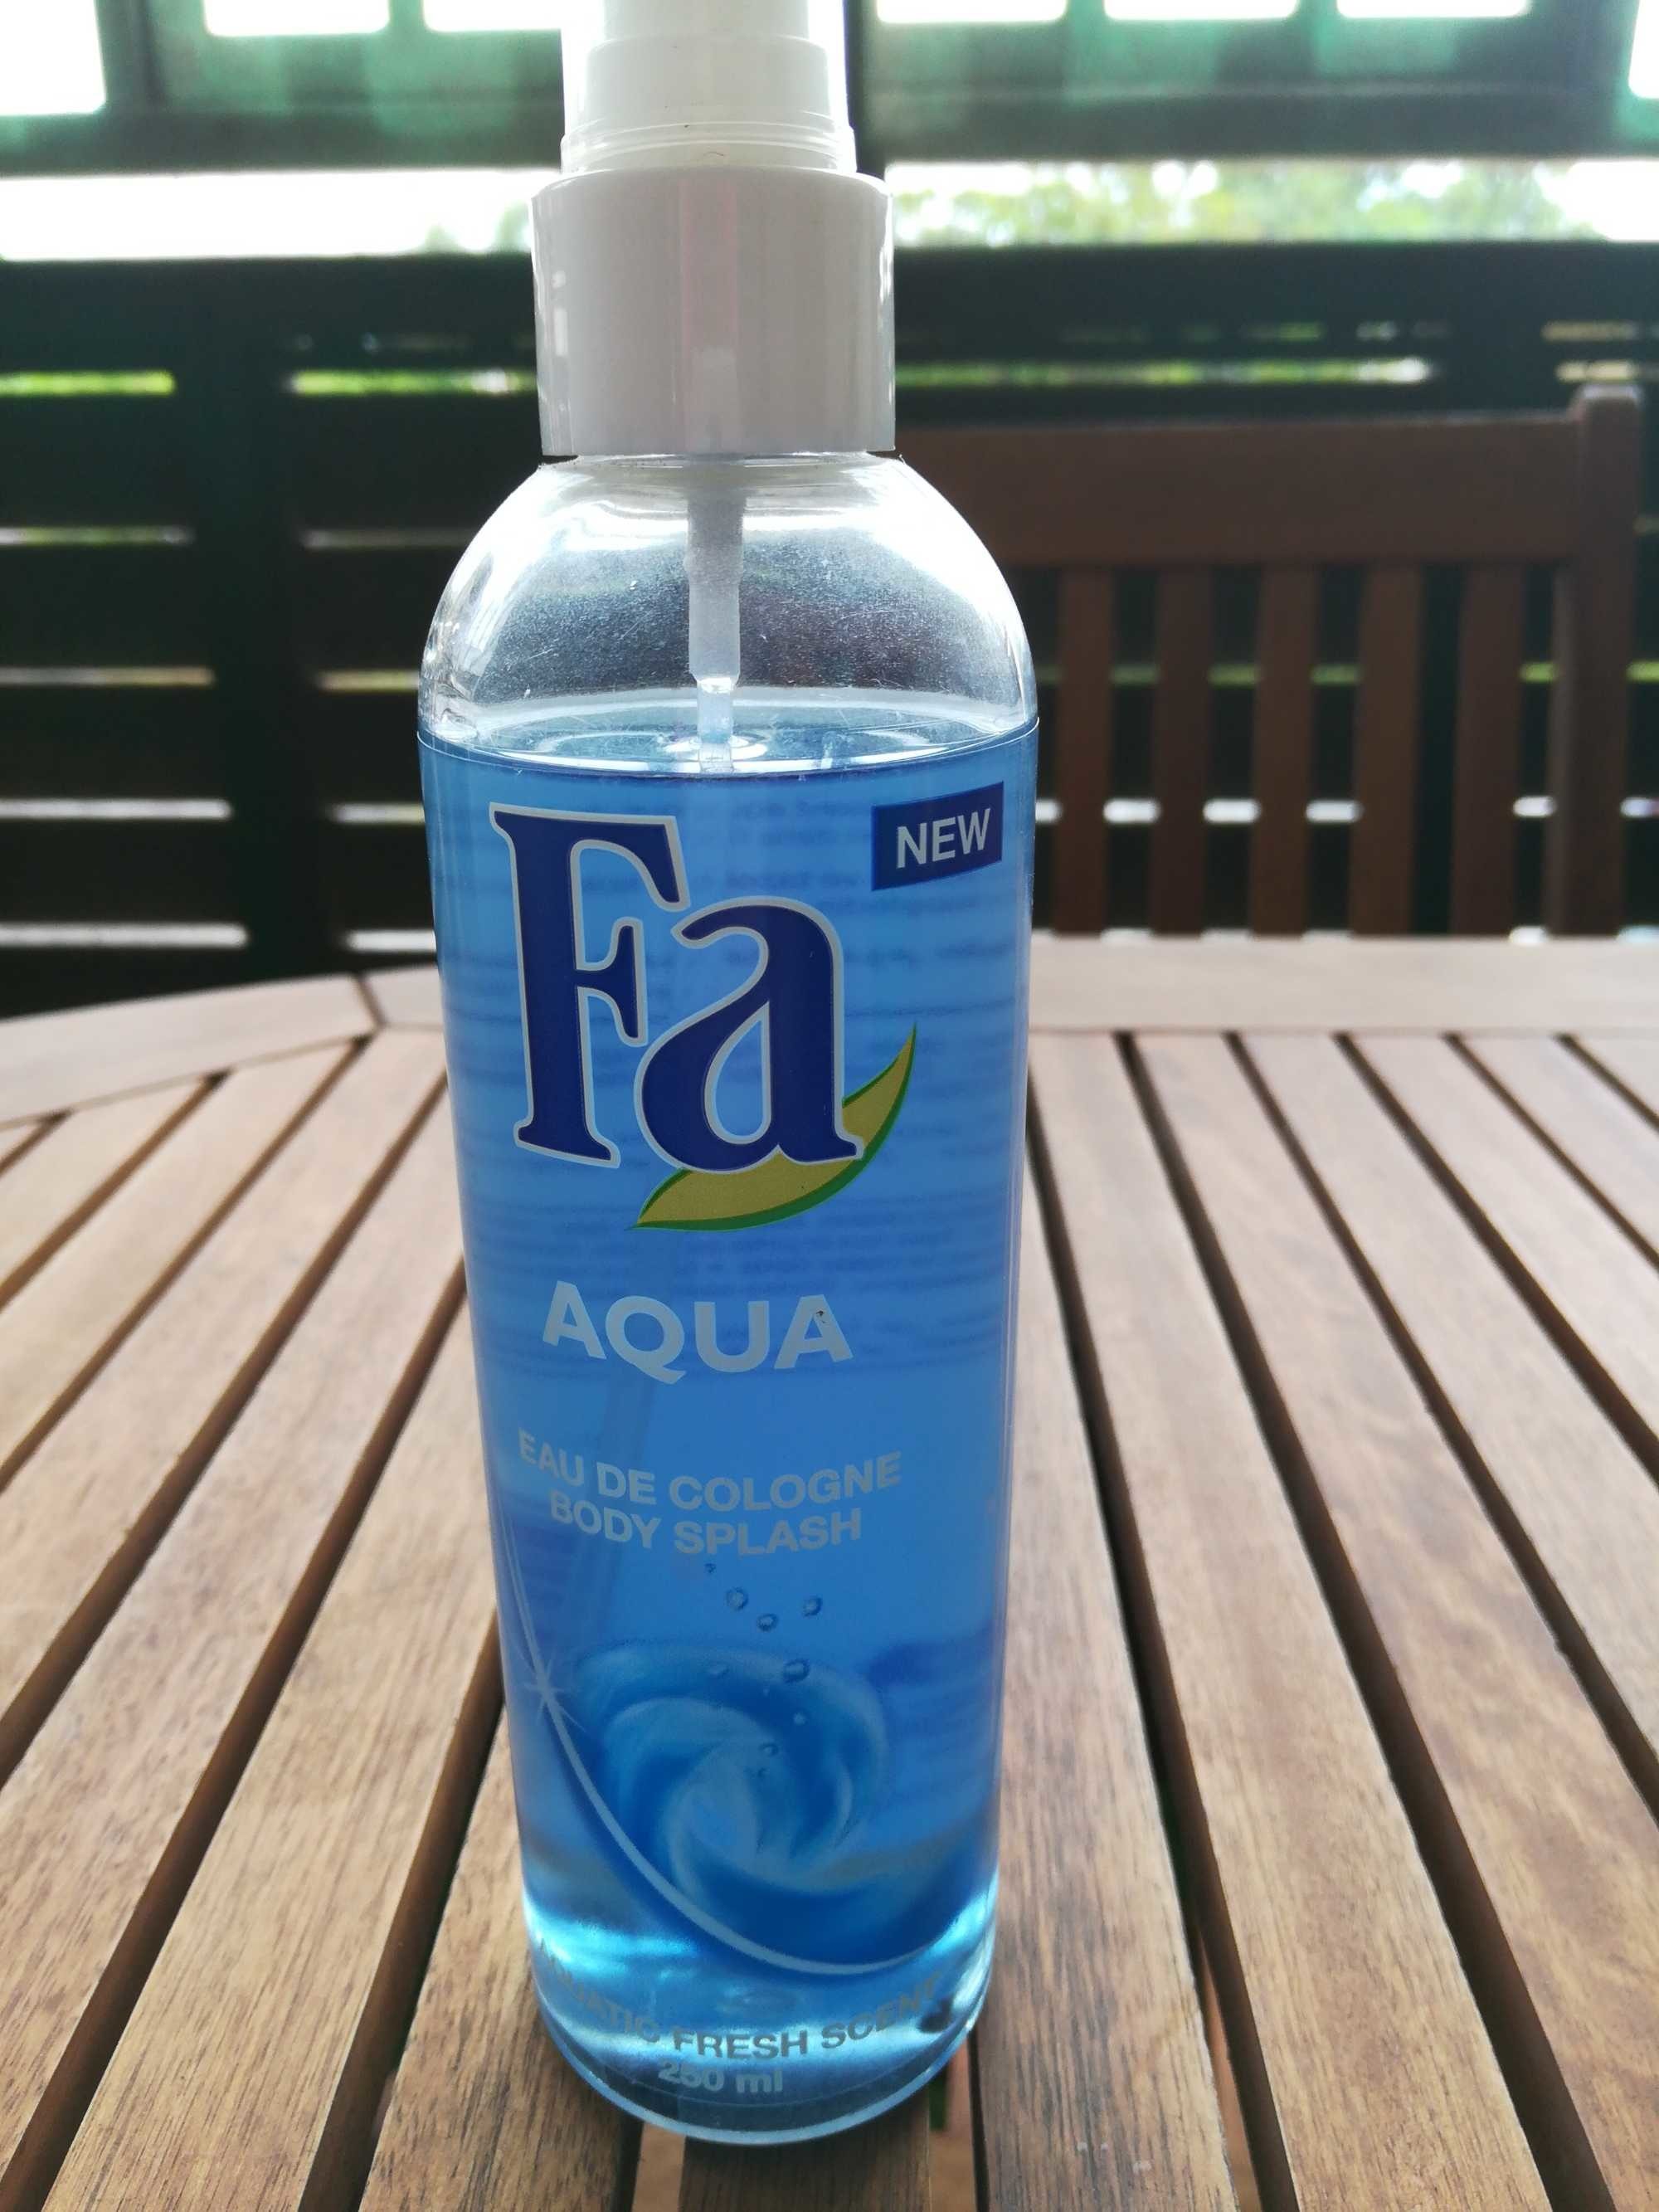 Aqua eau de cologne - Produit - fr